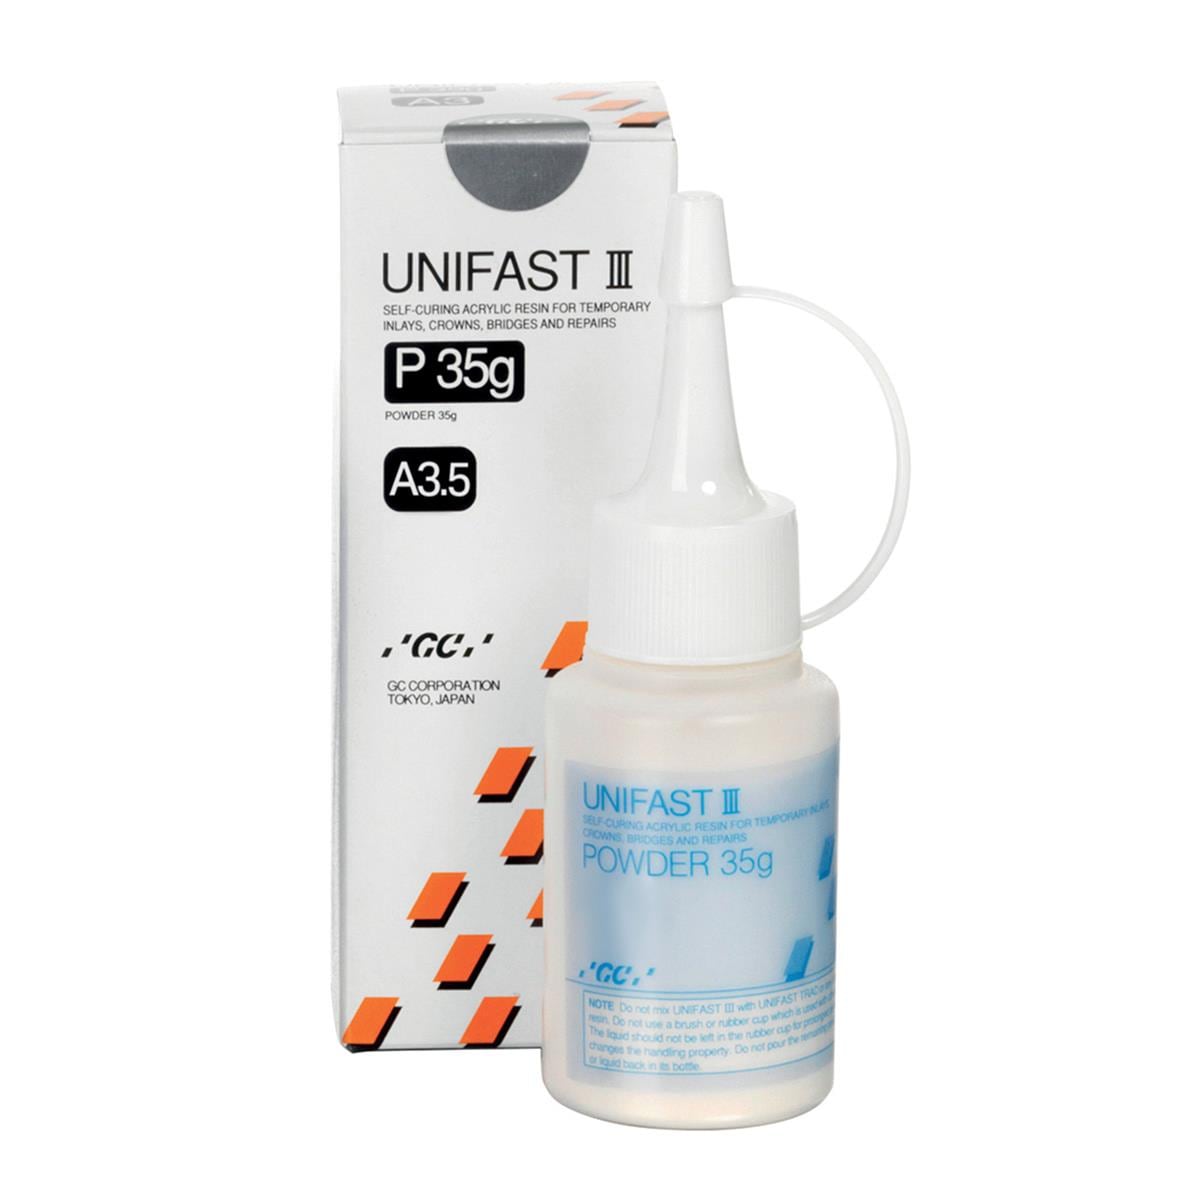 Unifast III Powder Shade A3.5 35g